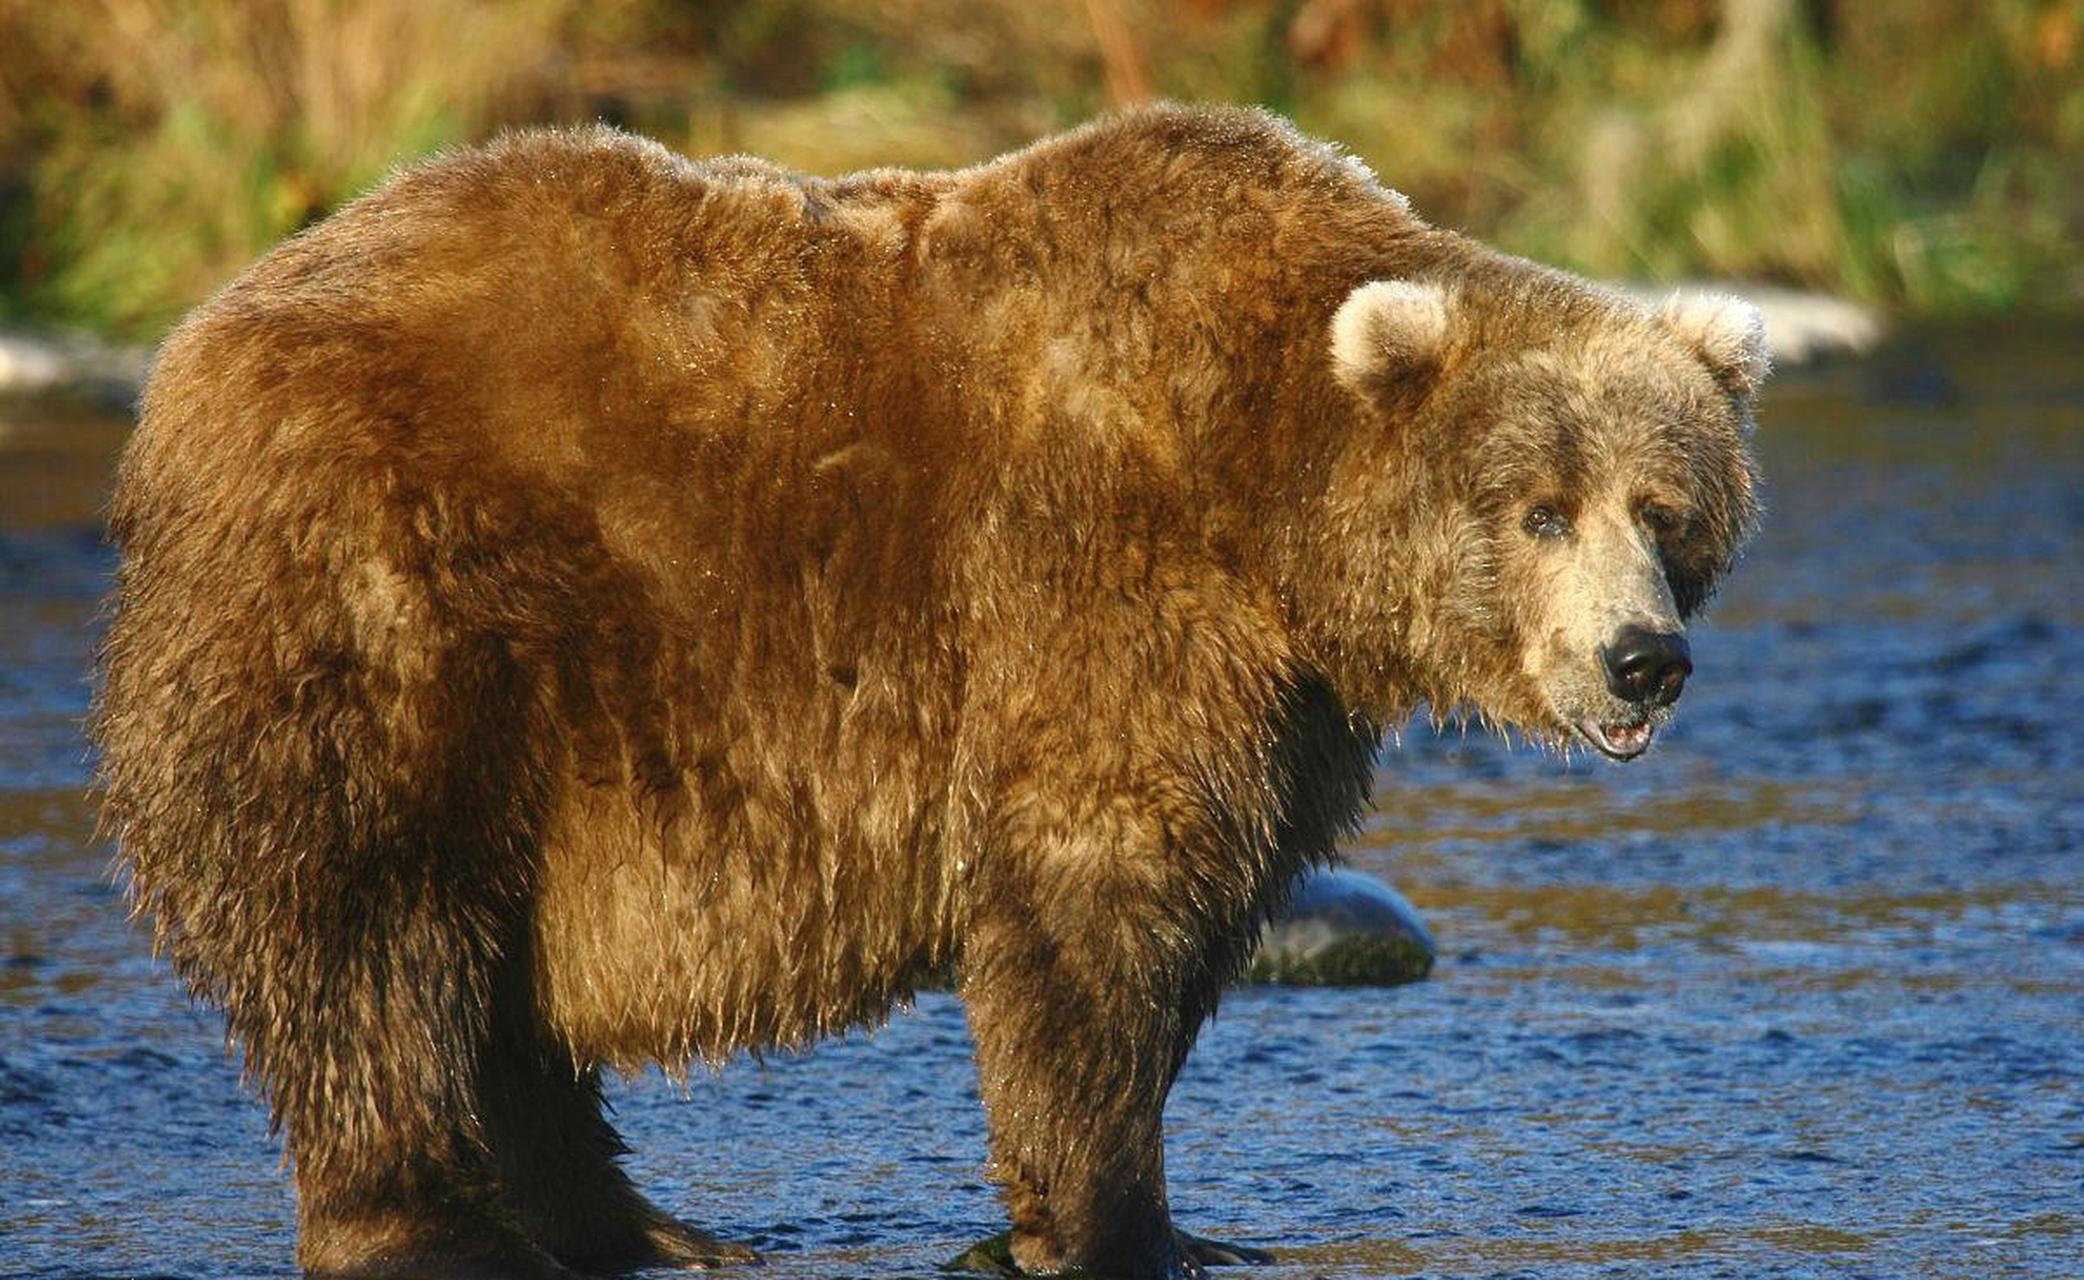 [嘻嘻]科迪亚克棕熊,800斤的大个头野外遇到它,该怎么做?